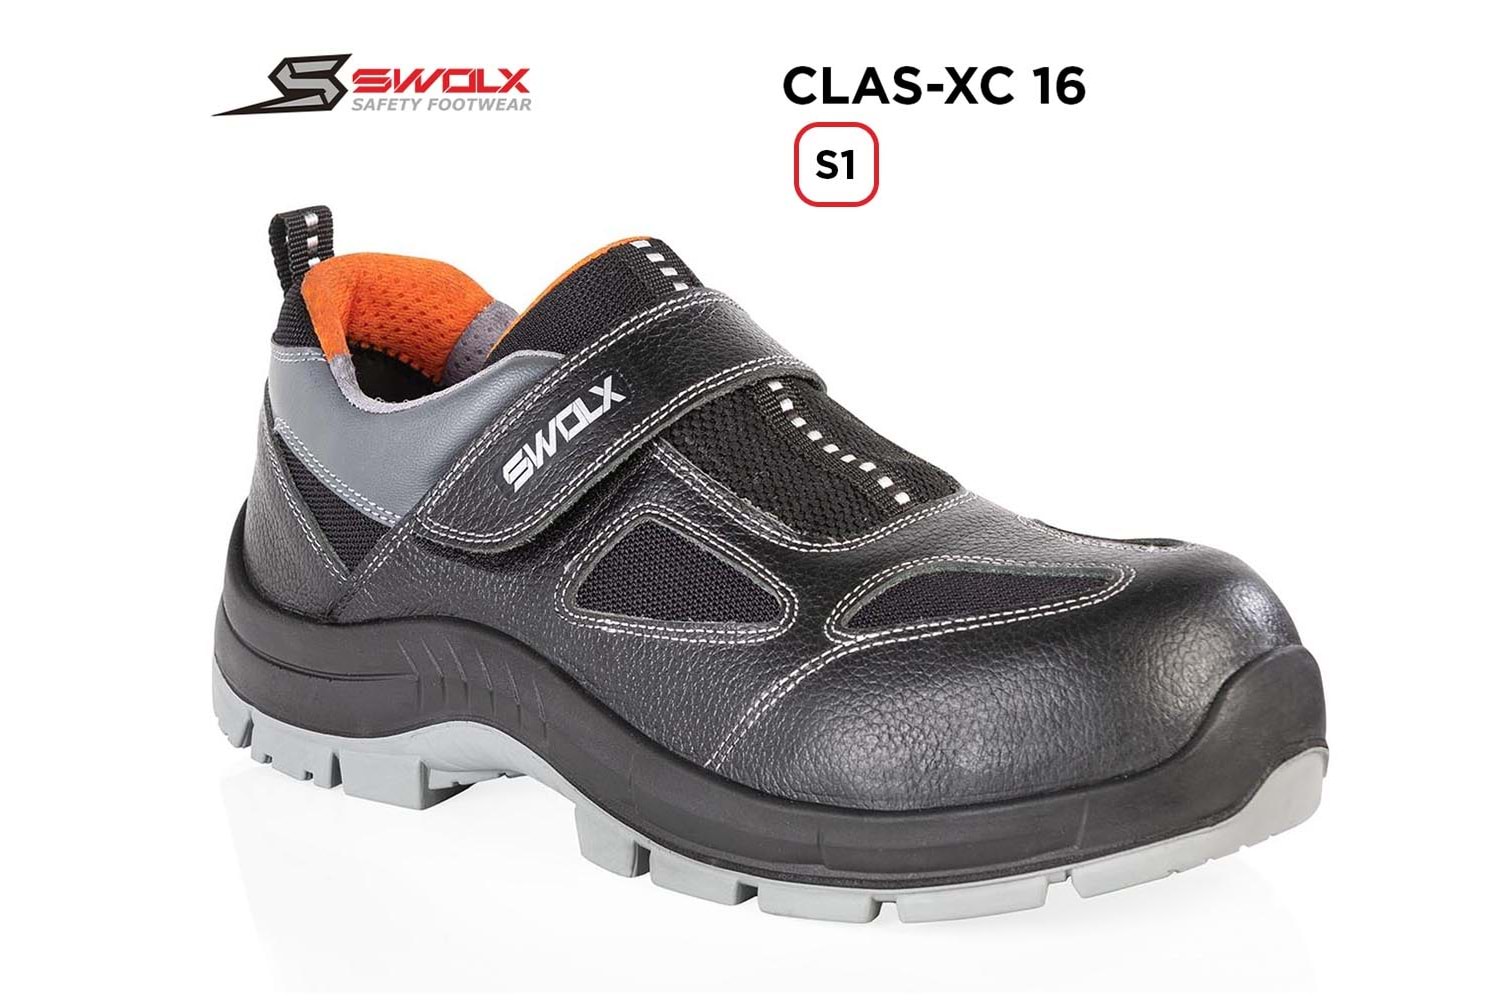 Swolx İş Ayakkabısı - Clas-Xc 16 S1 - 43